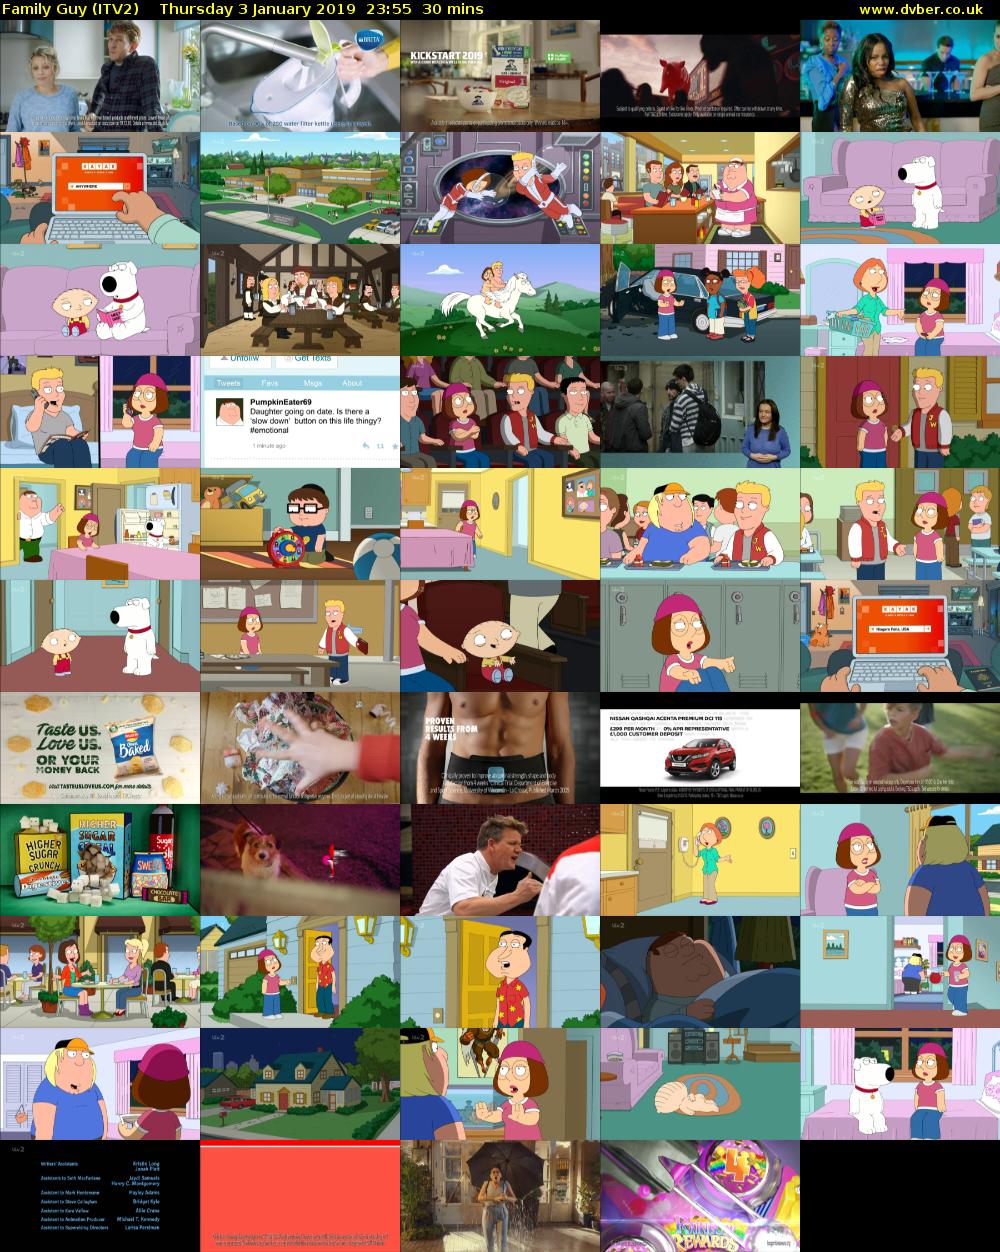 Family Guy (ITV2) Thursday 3 January 2019 23:55 - 00:25